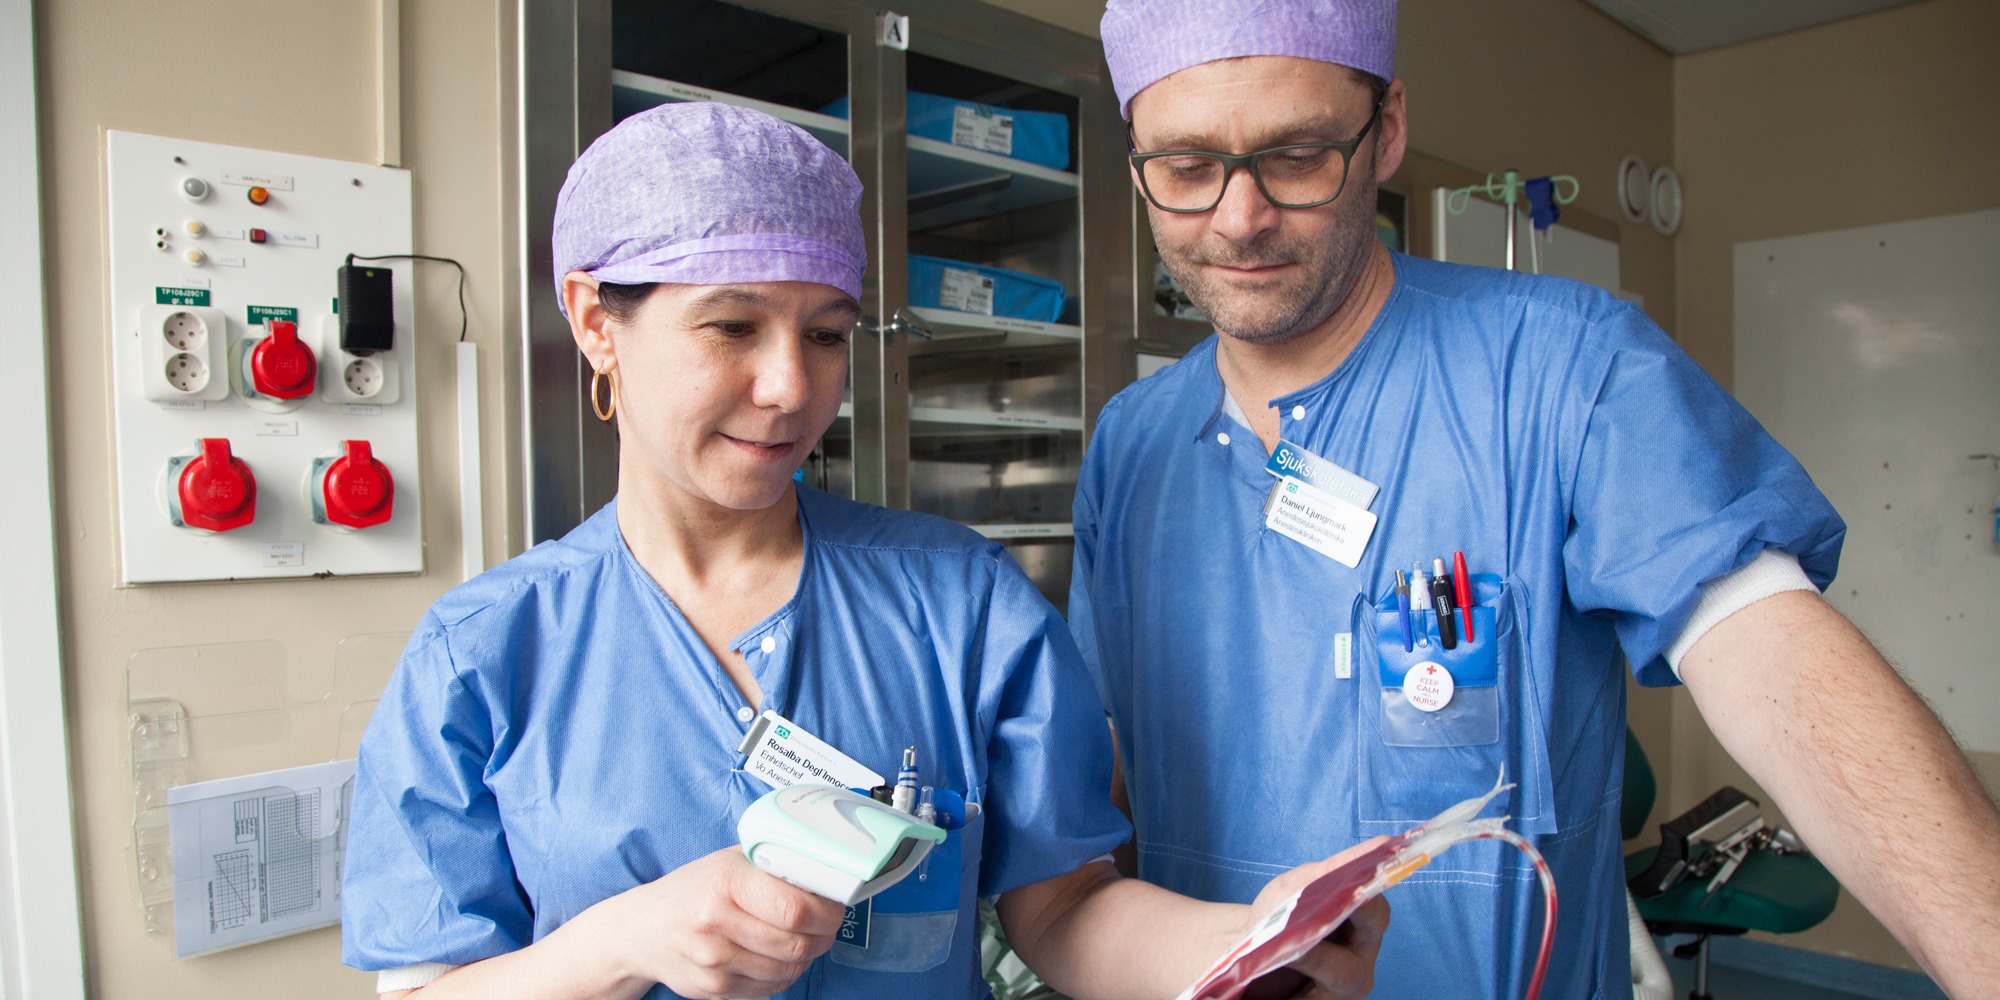 Kvinna sjuksköterska håller i blodpåse och scanningsapparat, kollega man sjuksköterska står bredvid, Arbetsmiljölyftet